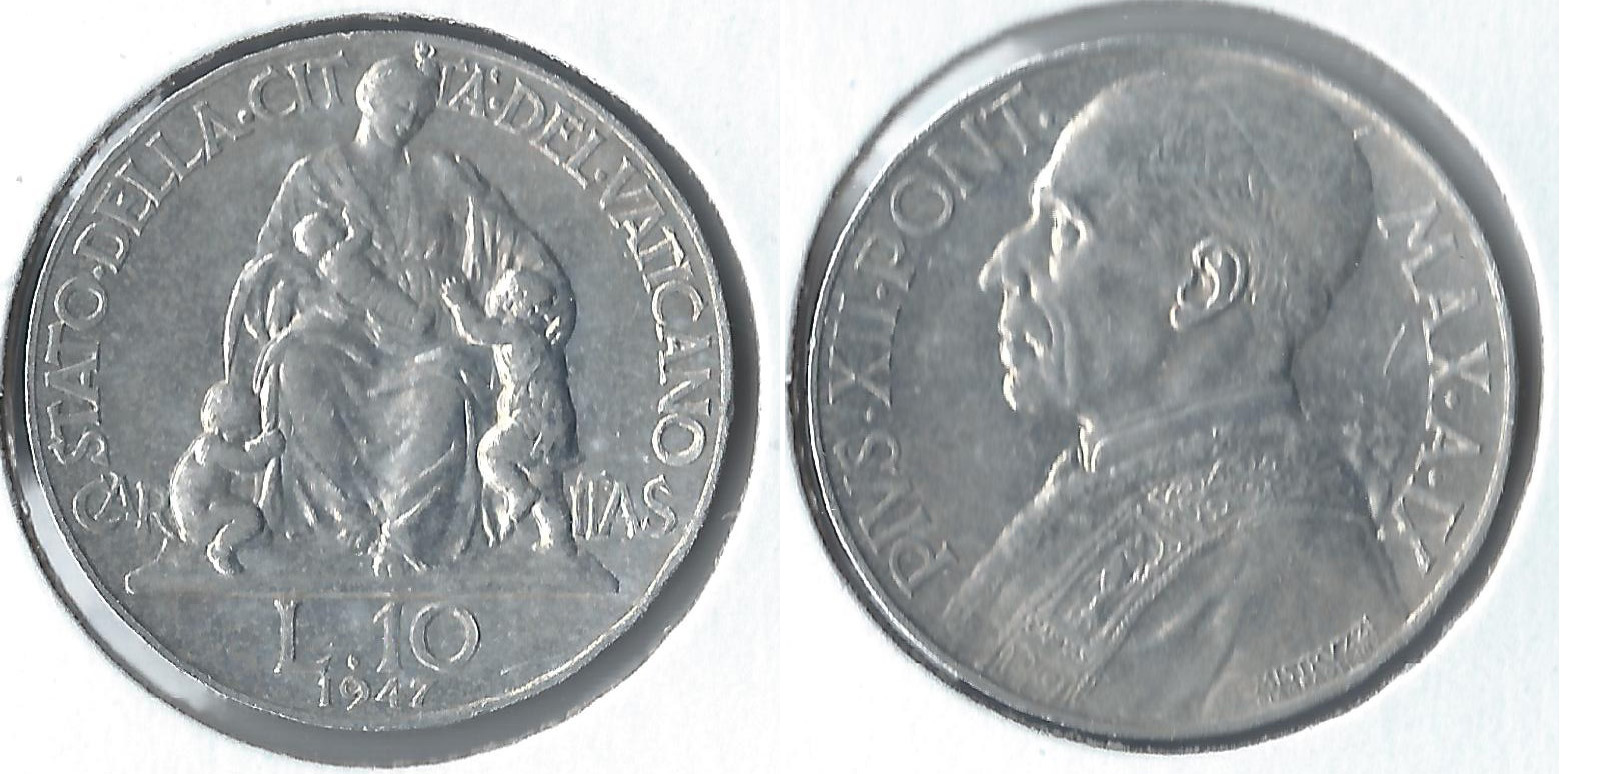 1947 vatican 10 lire.jpg